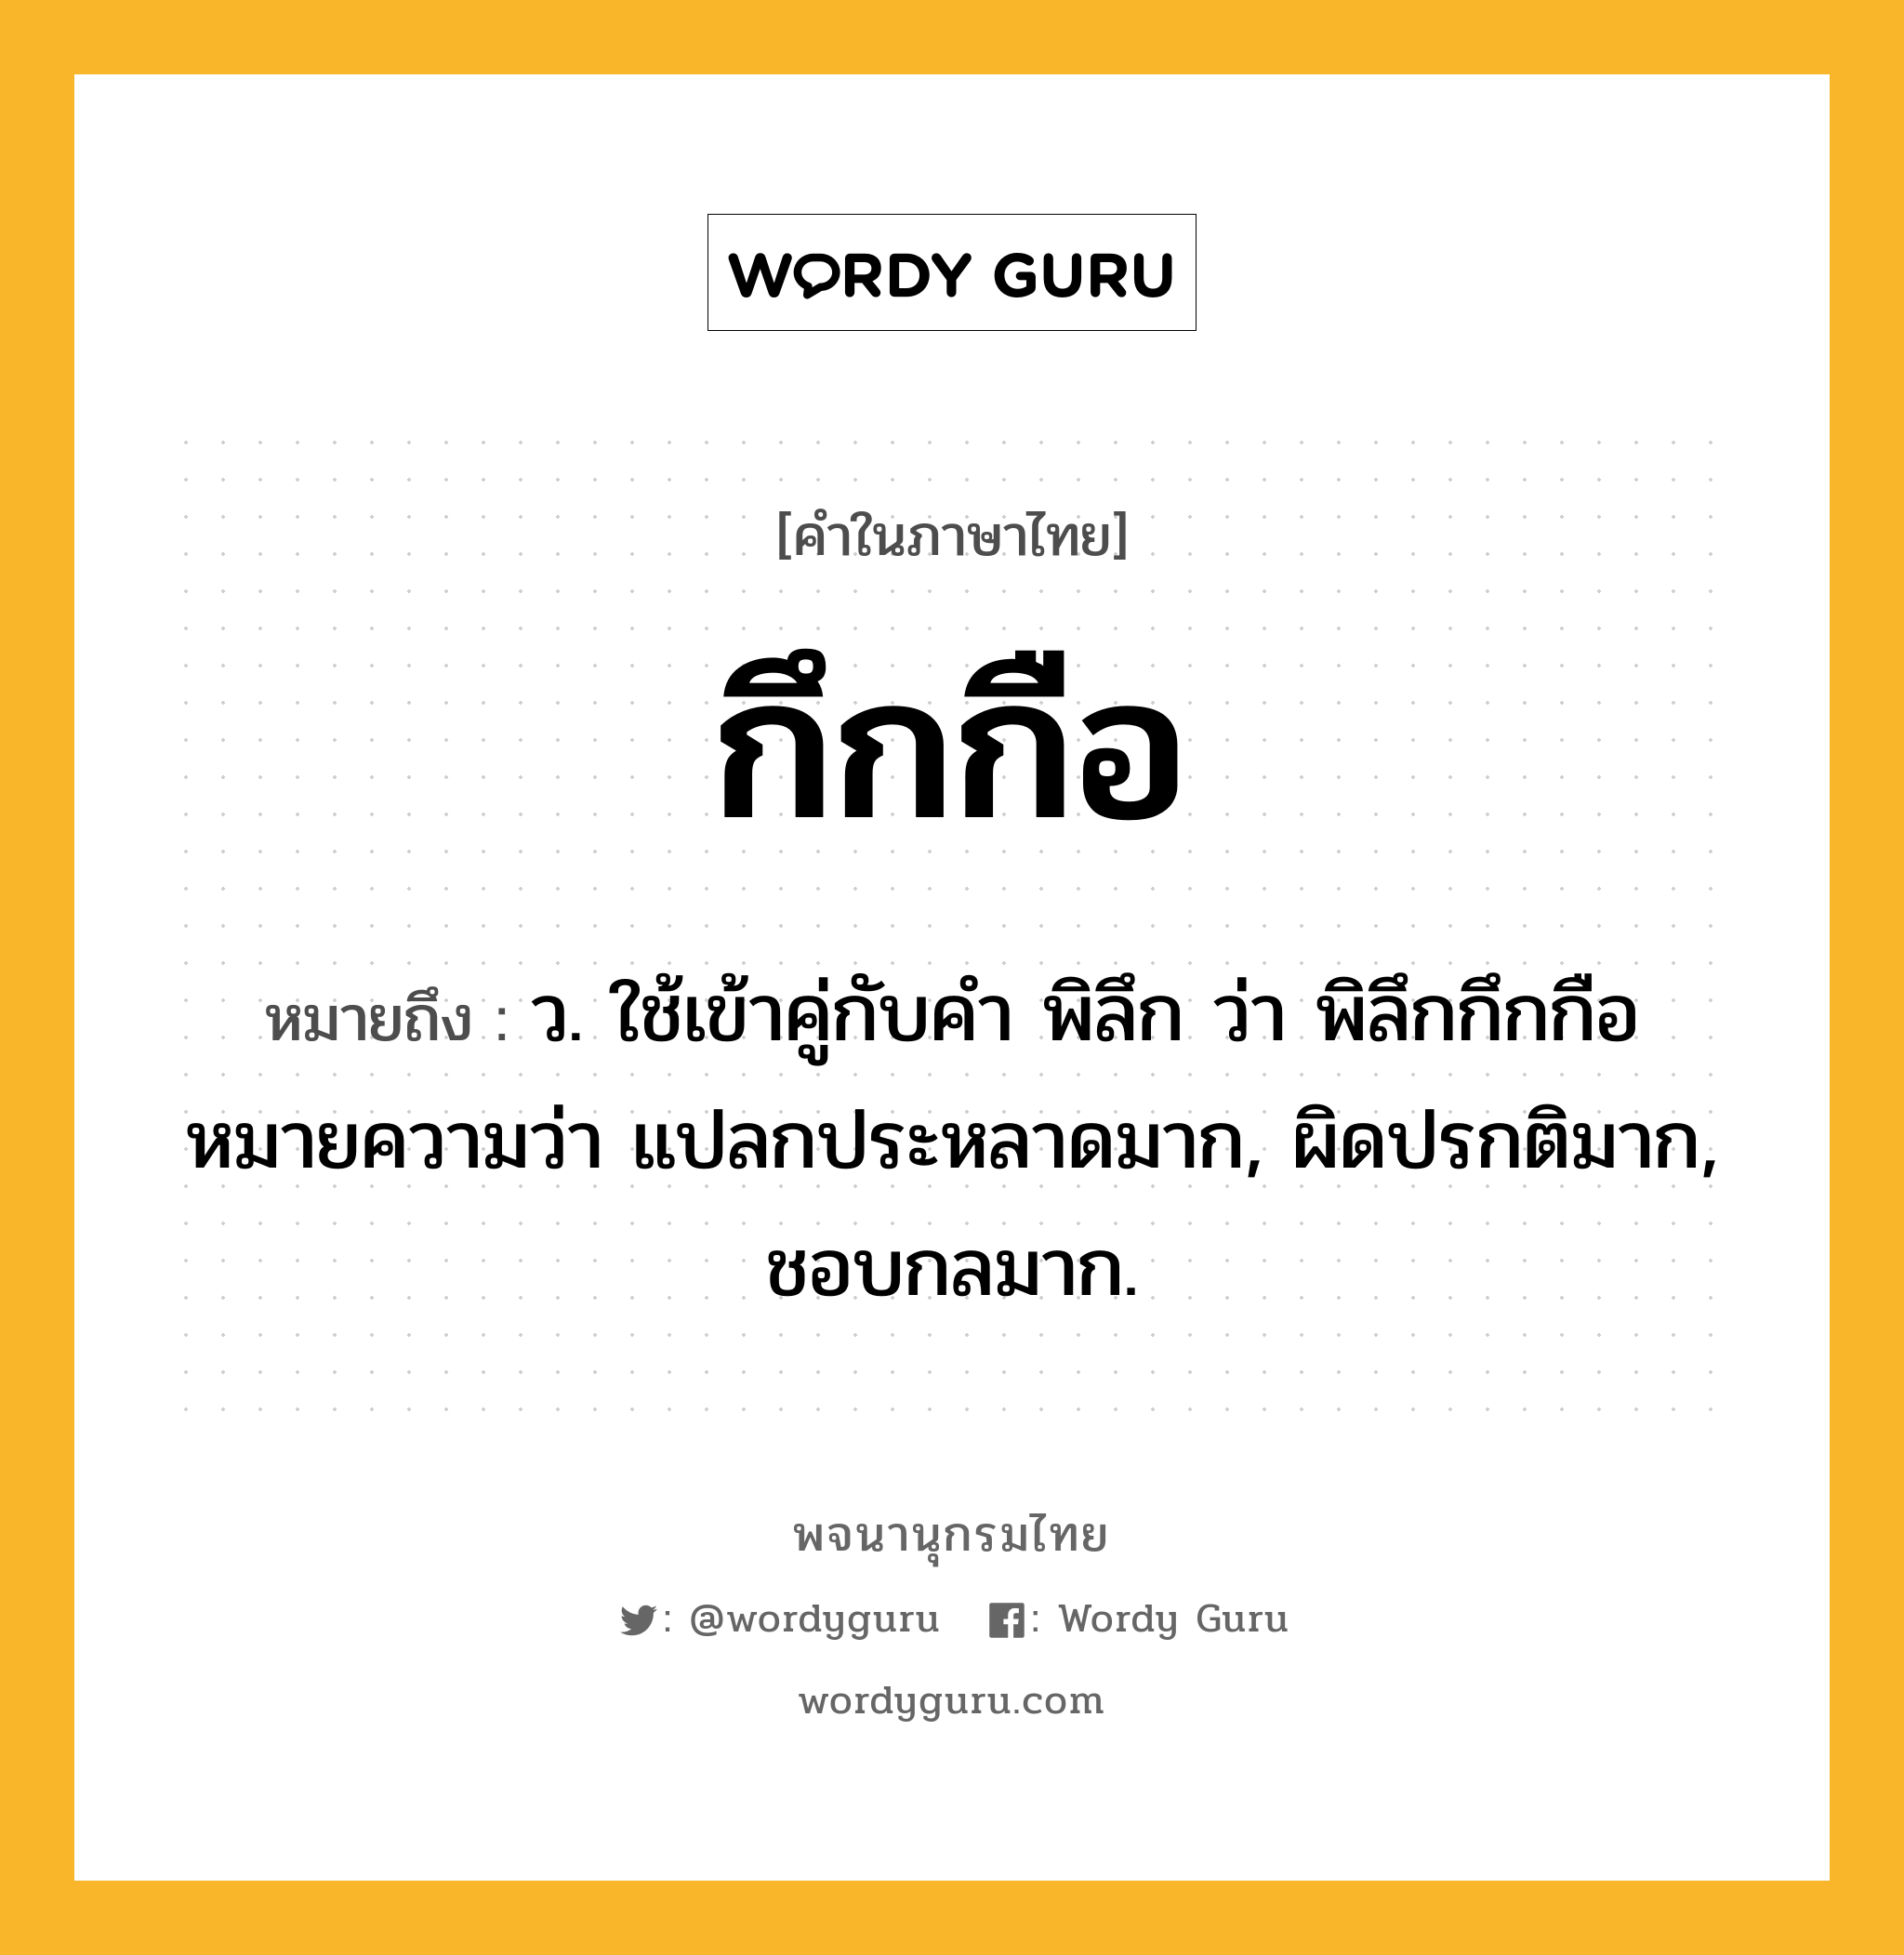 กึกกือ ความหมาย หมายถึงอะไร?, คำในภาษาไทย กึกกือ หมายถึง ว. ใช้เข้าคู่กับคํา พิลึก ว่า พิลึกกึกกือ หมายความว่า แปลกประหลาดมาก, ผิดปรกติมาก, ชอบกลมาก.